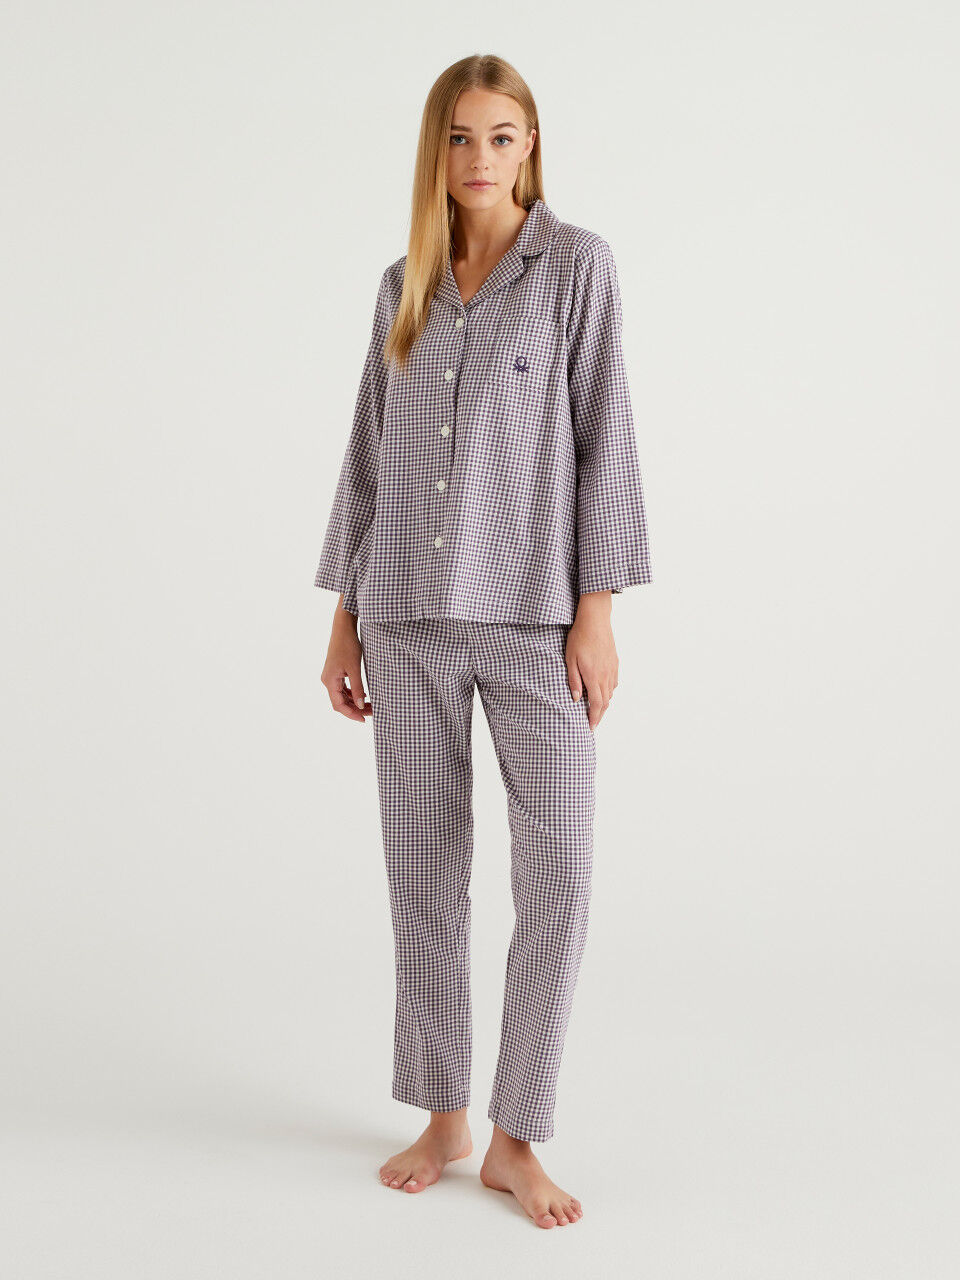 Vichy pyjamas in cotton